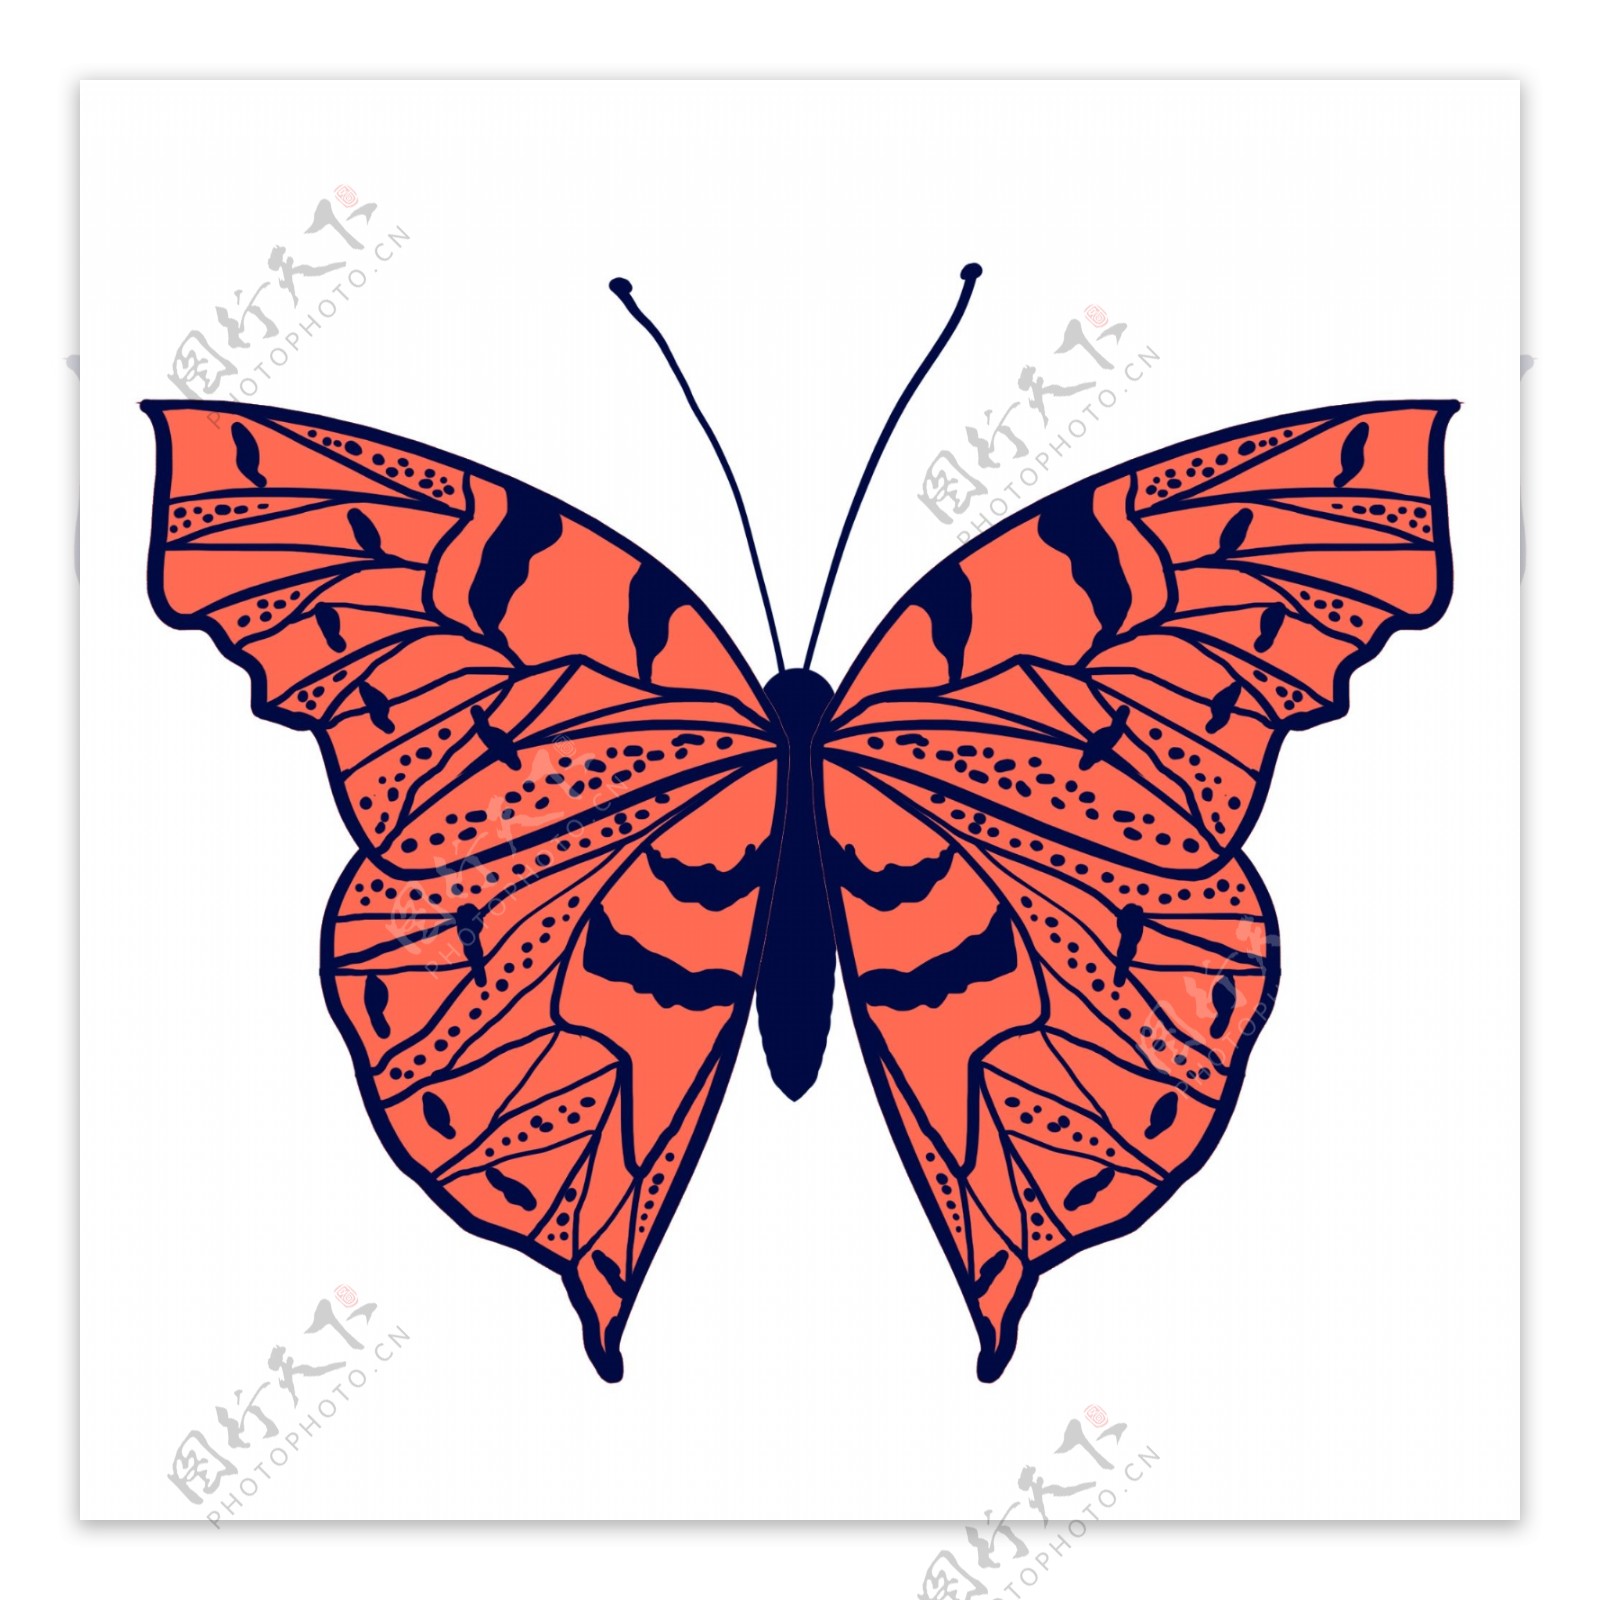 昆虫蝴蝶标本橙色